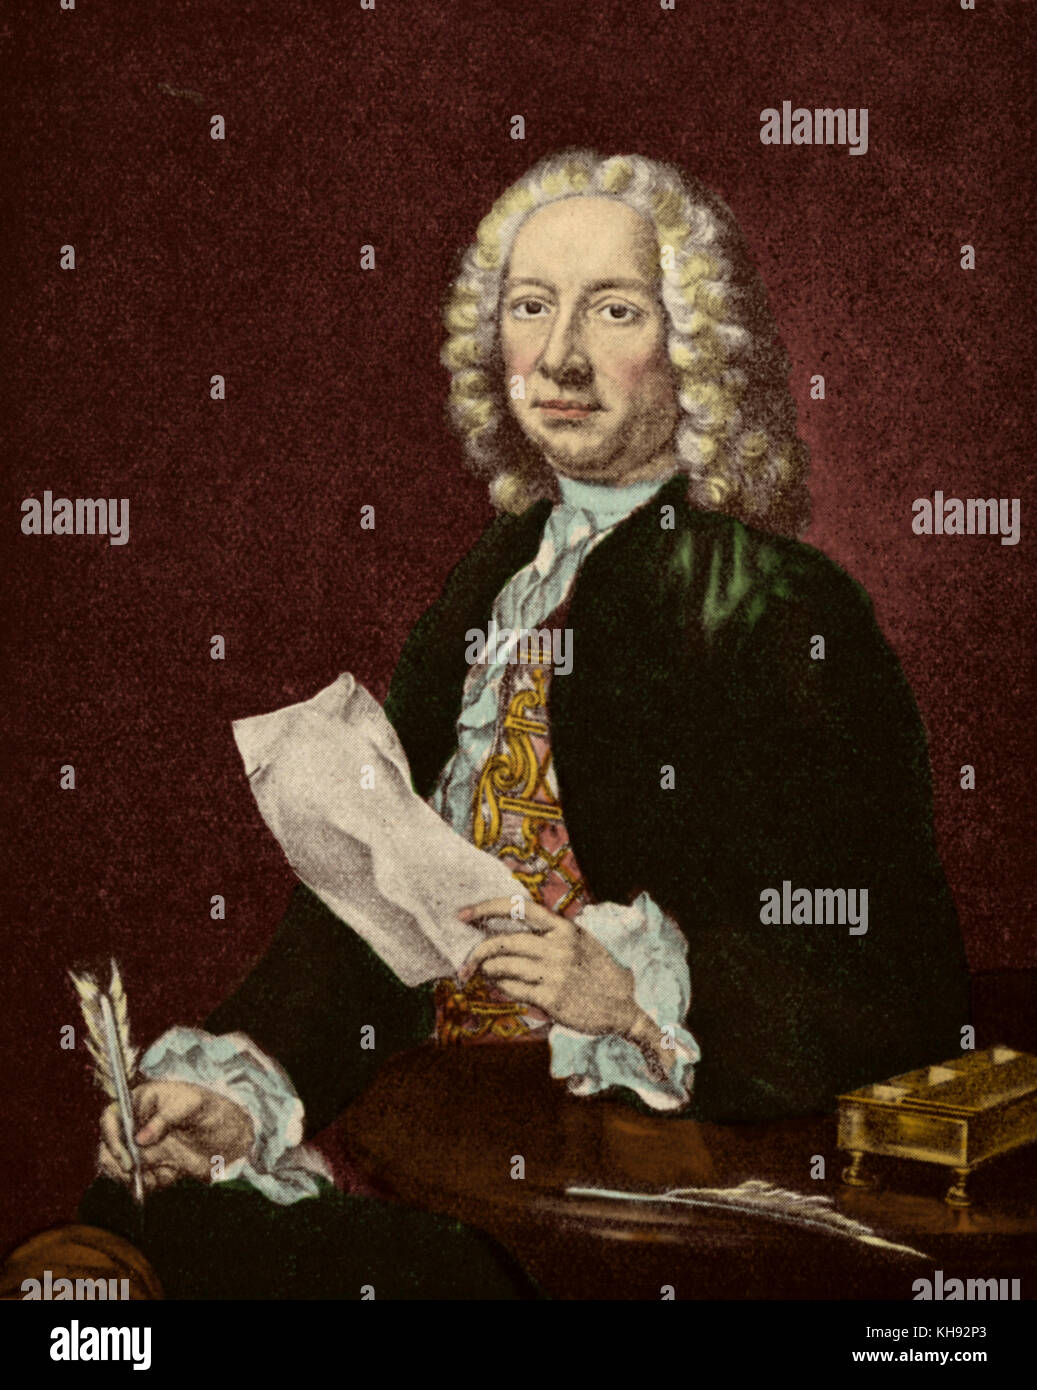 Francesco Geminiani - Portrait. Thema der ersten Violine Methode. Italienischer Violinist und Komponist. Schüler von Corelli. Vom 5. Dezember 1687 bis 17. September 1762. Stockfoto